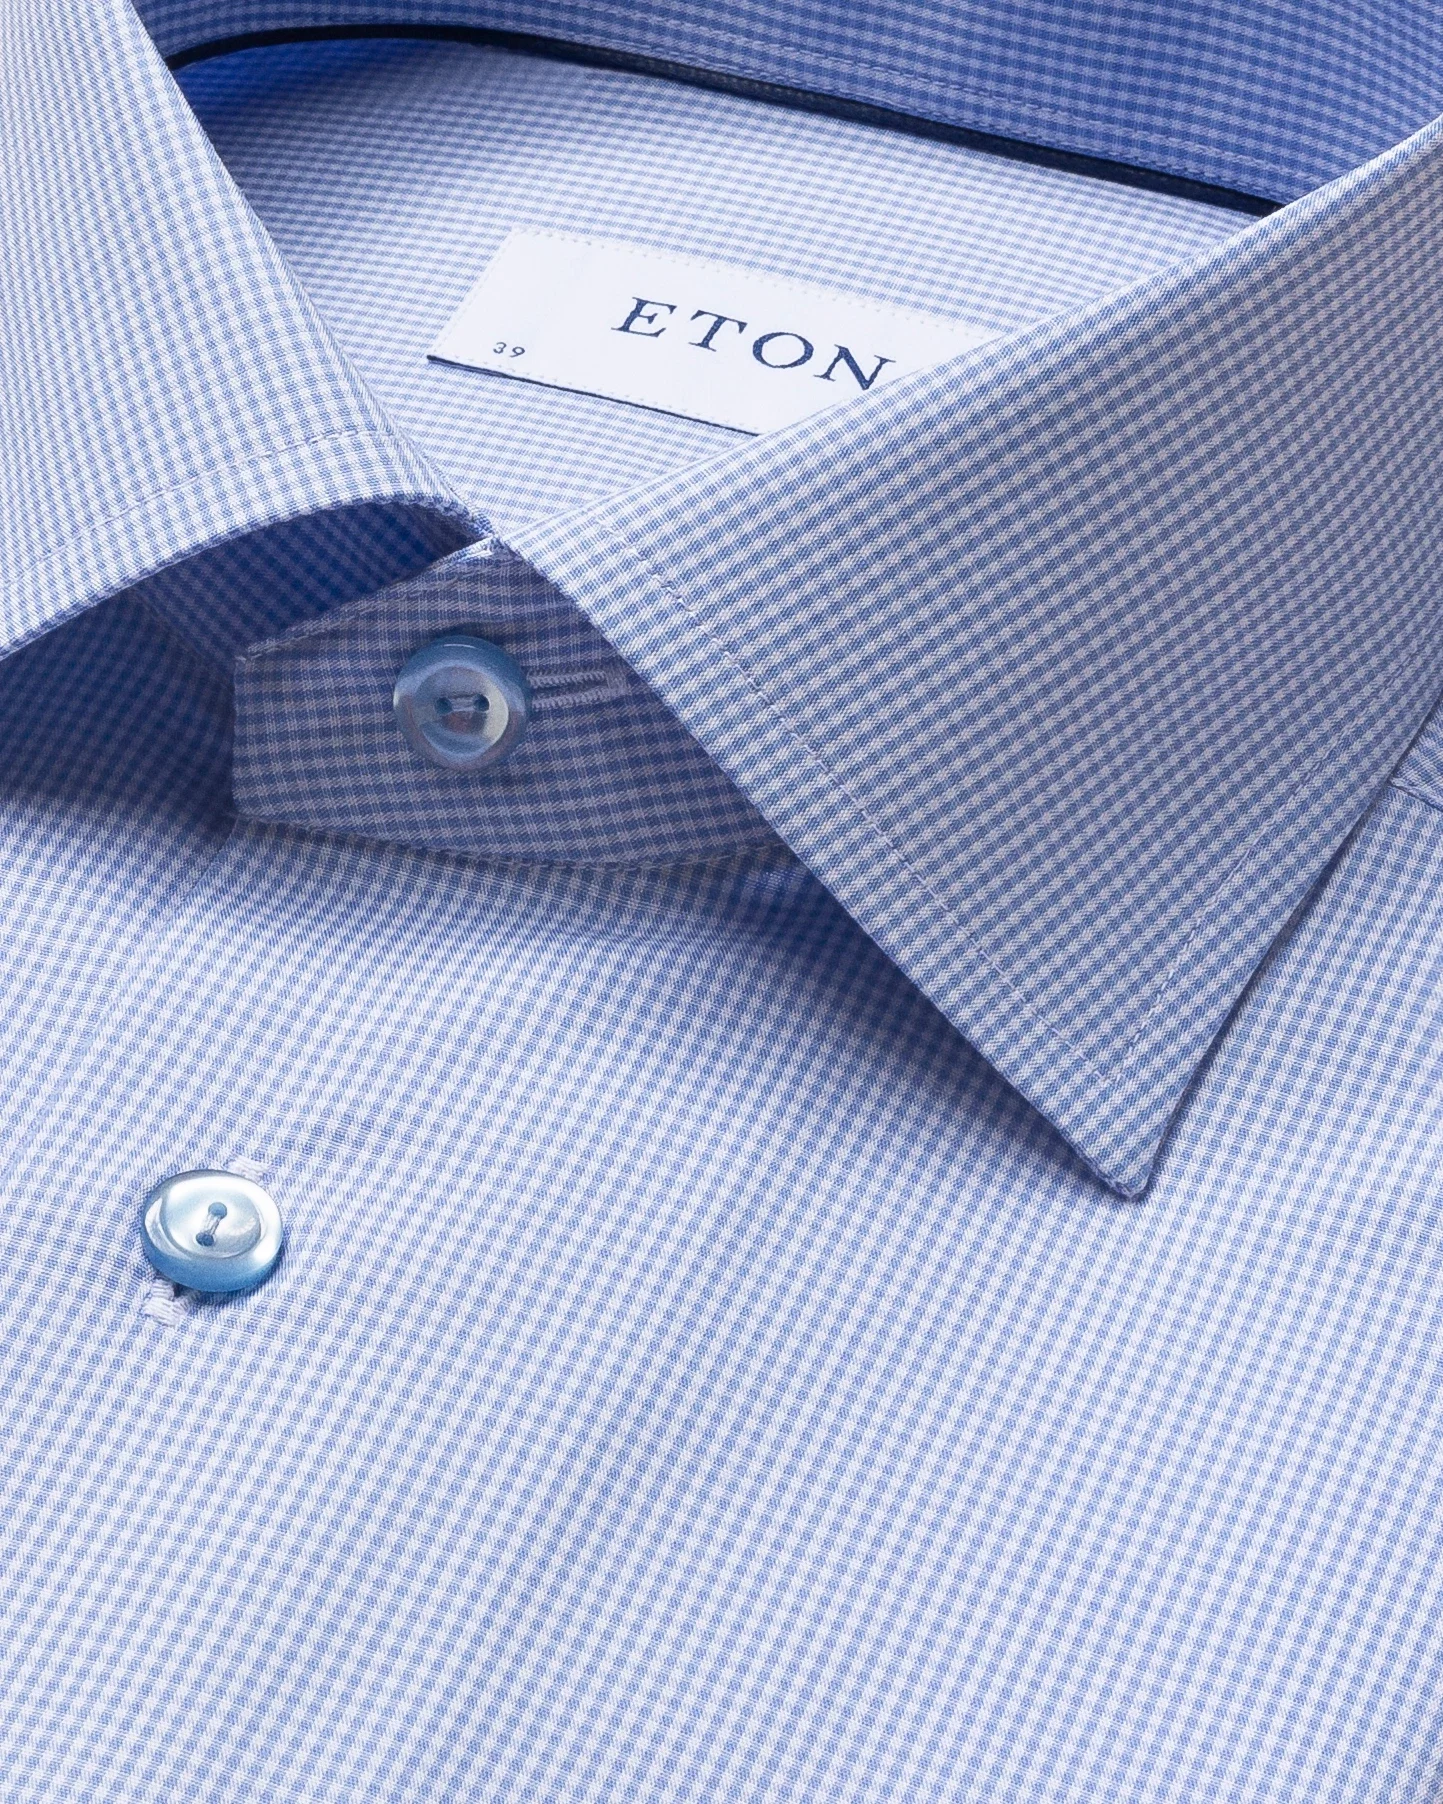 Eton - light blue gingham poplin shirt